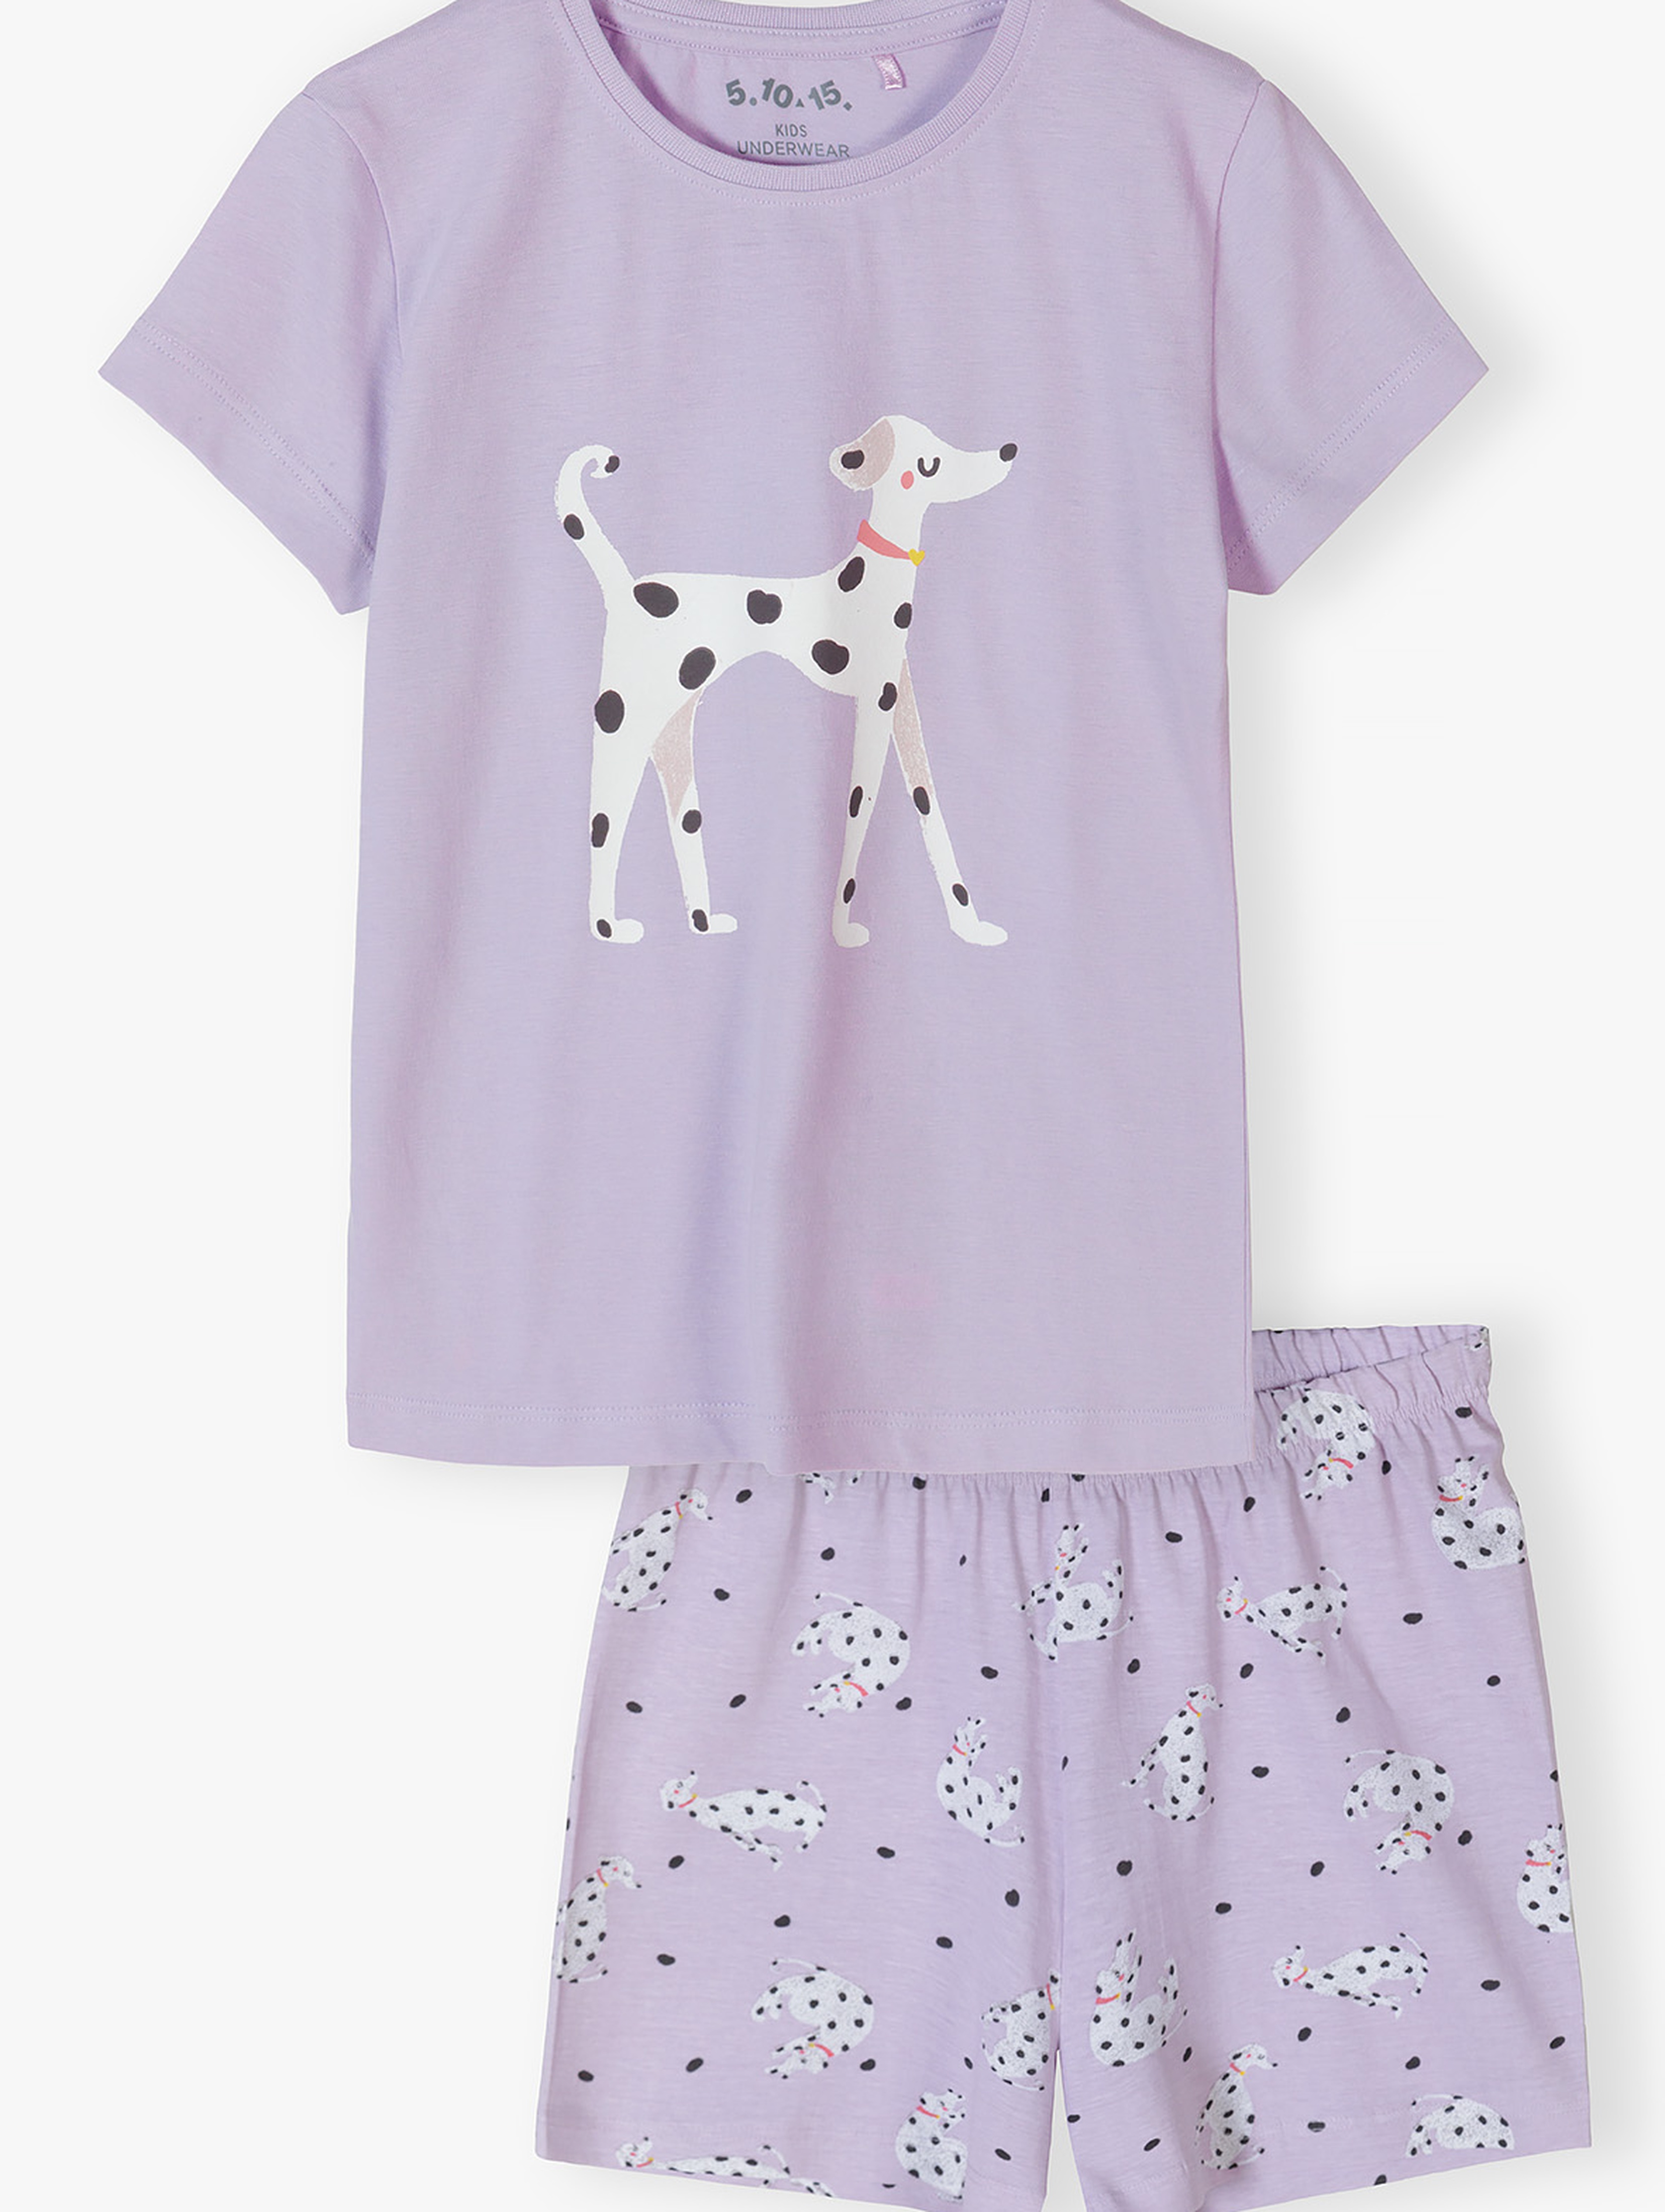 Piżama dla dziewczynki - fioletowa w dalmatyńczyki - 5.10.15.